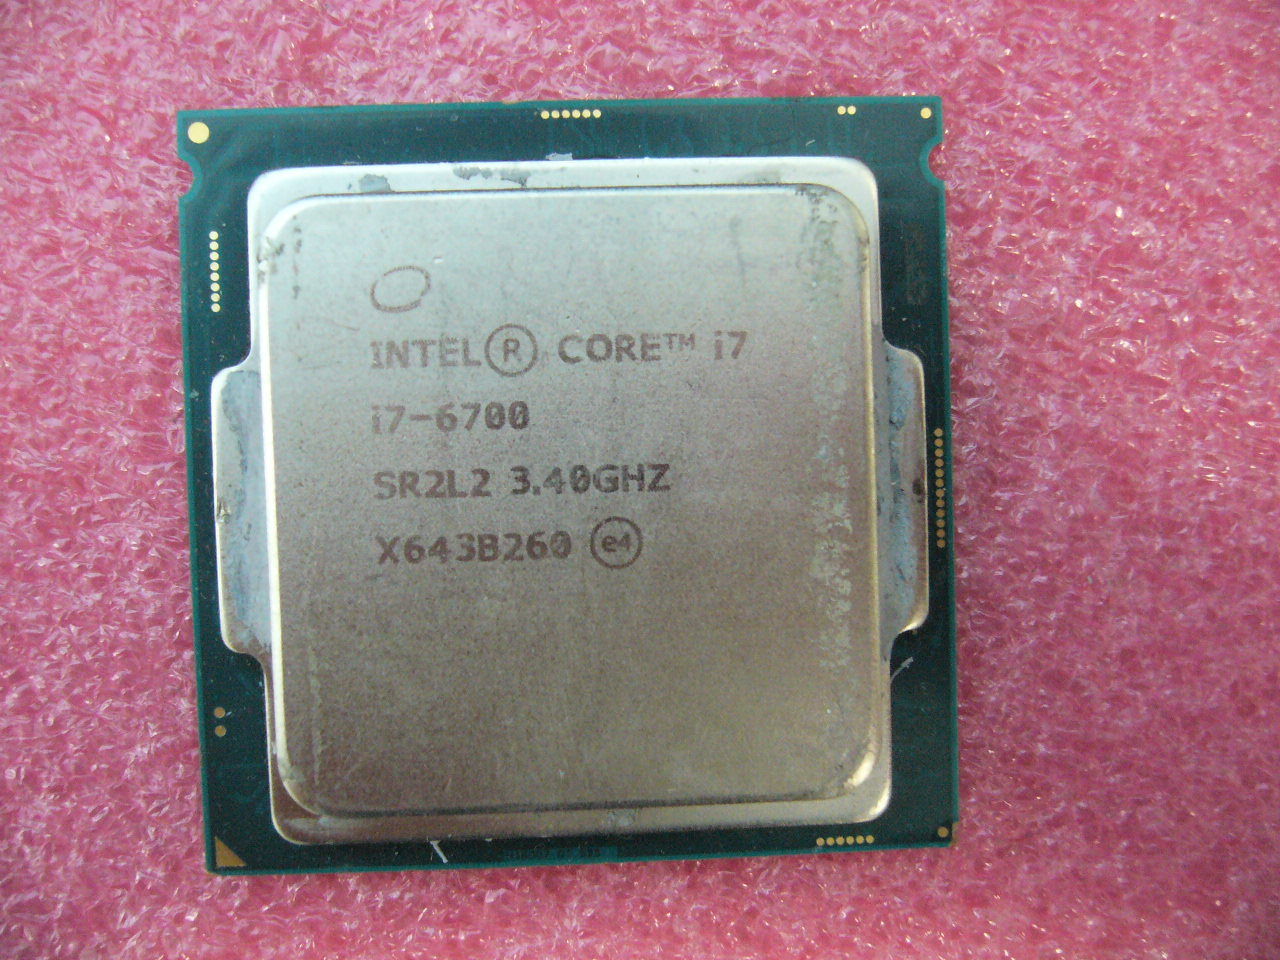 QTY 1x Intel CPU i7-6700 Quad-Cores 3.40Ghz 8MB LGA1151 SR2L2 SR2BT NOT WORKING - Click Image to Close